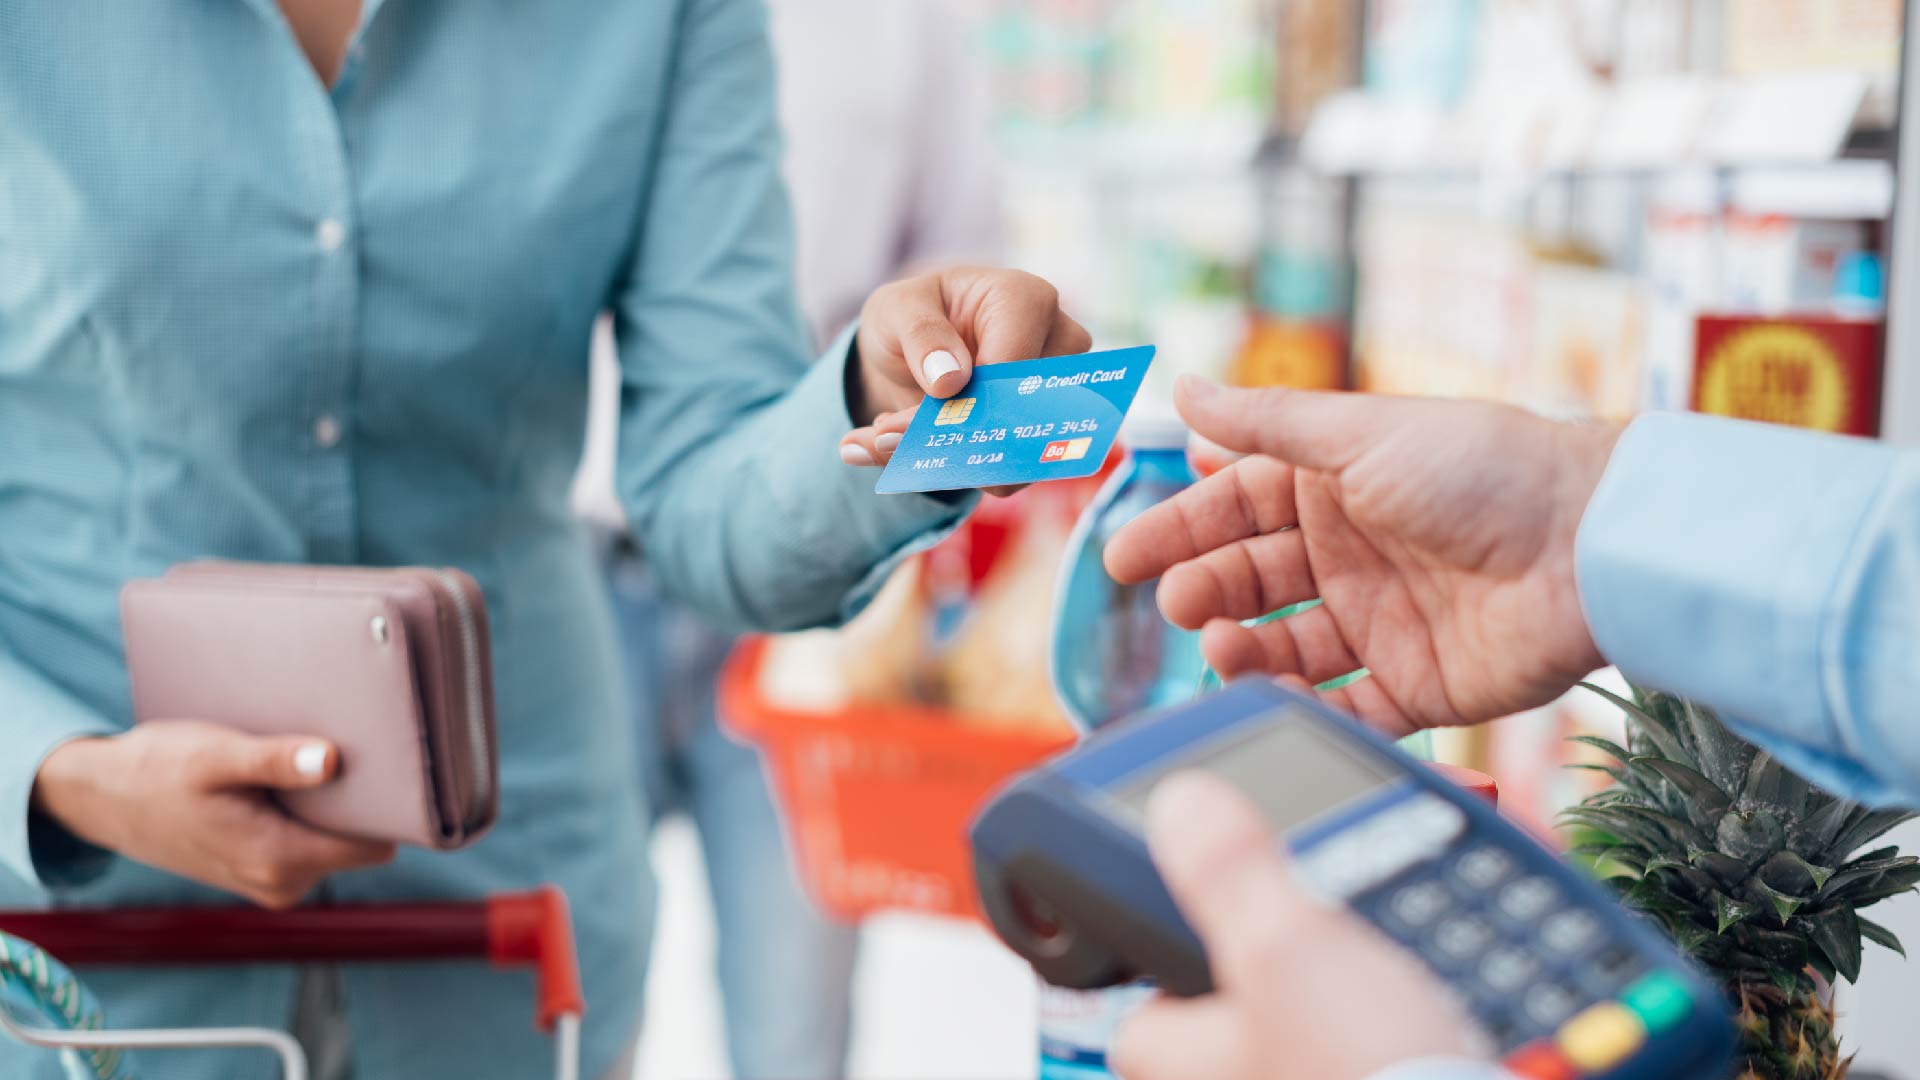 Een vrouw betaalt met kaart aan de kassa van een supermarkt